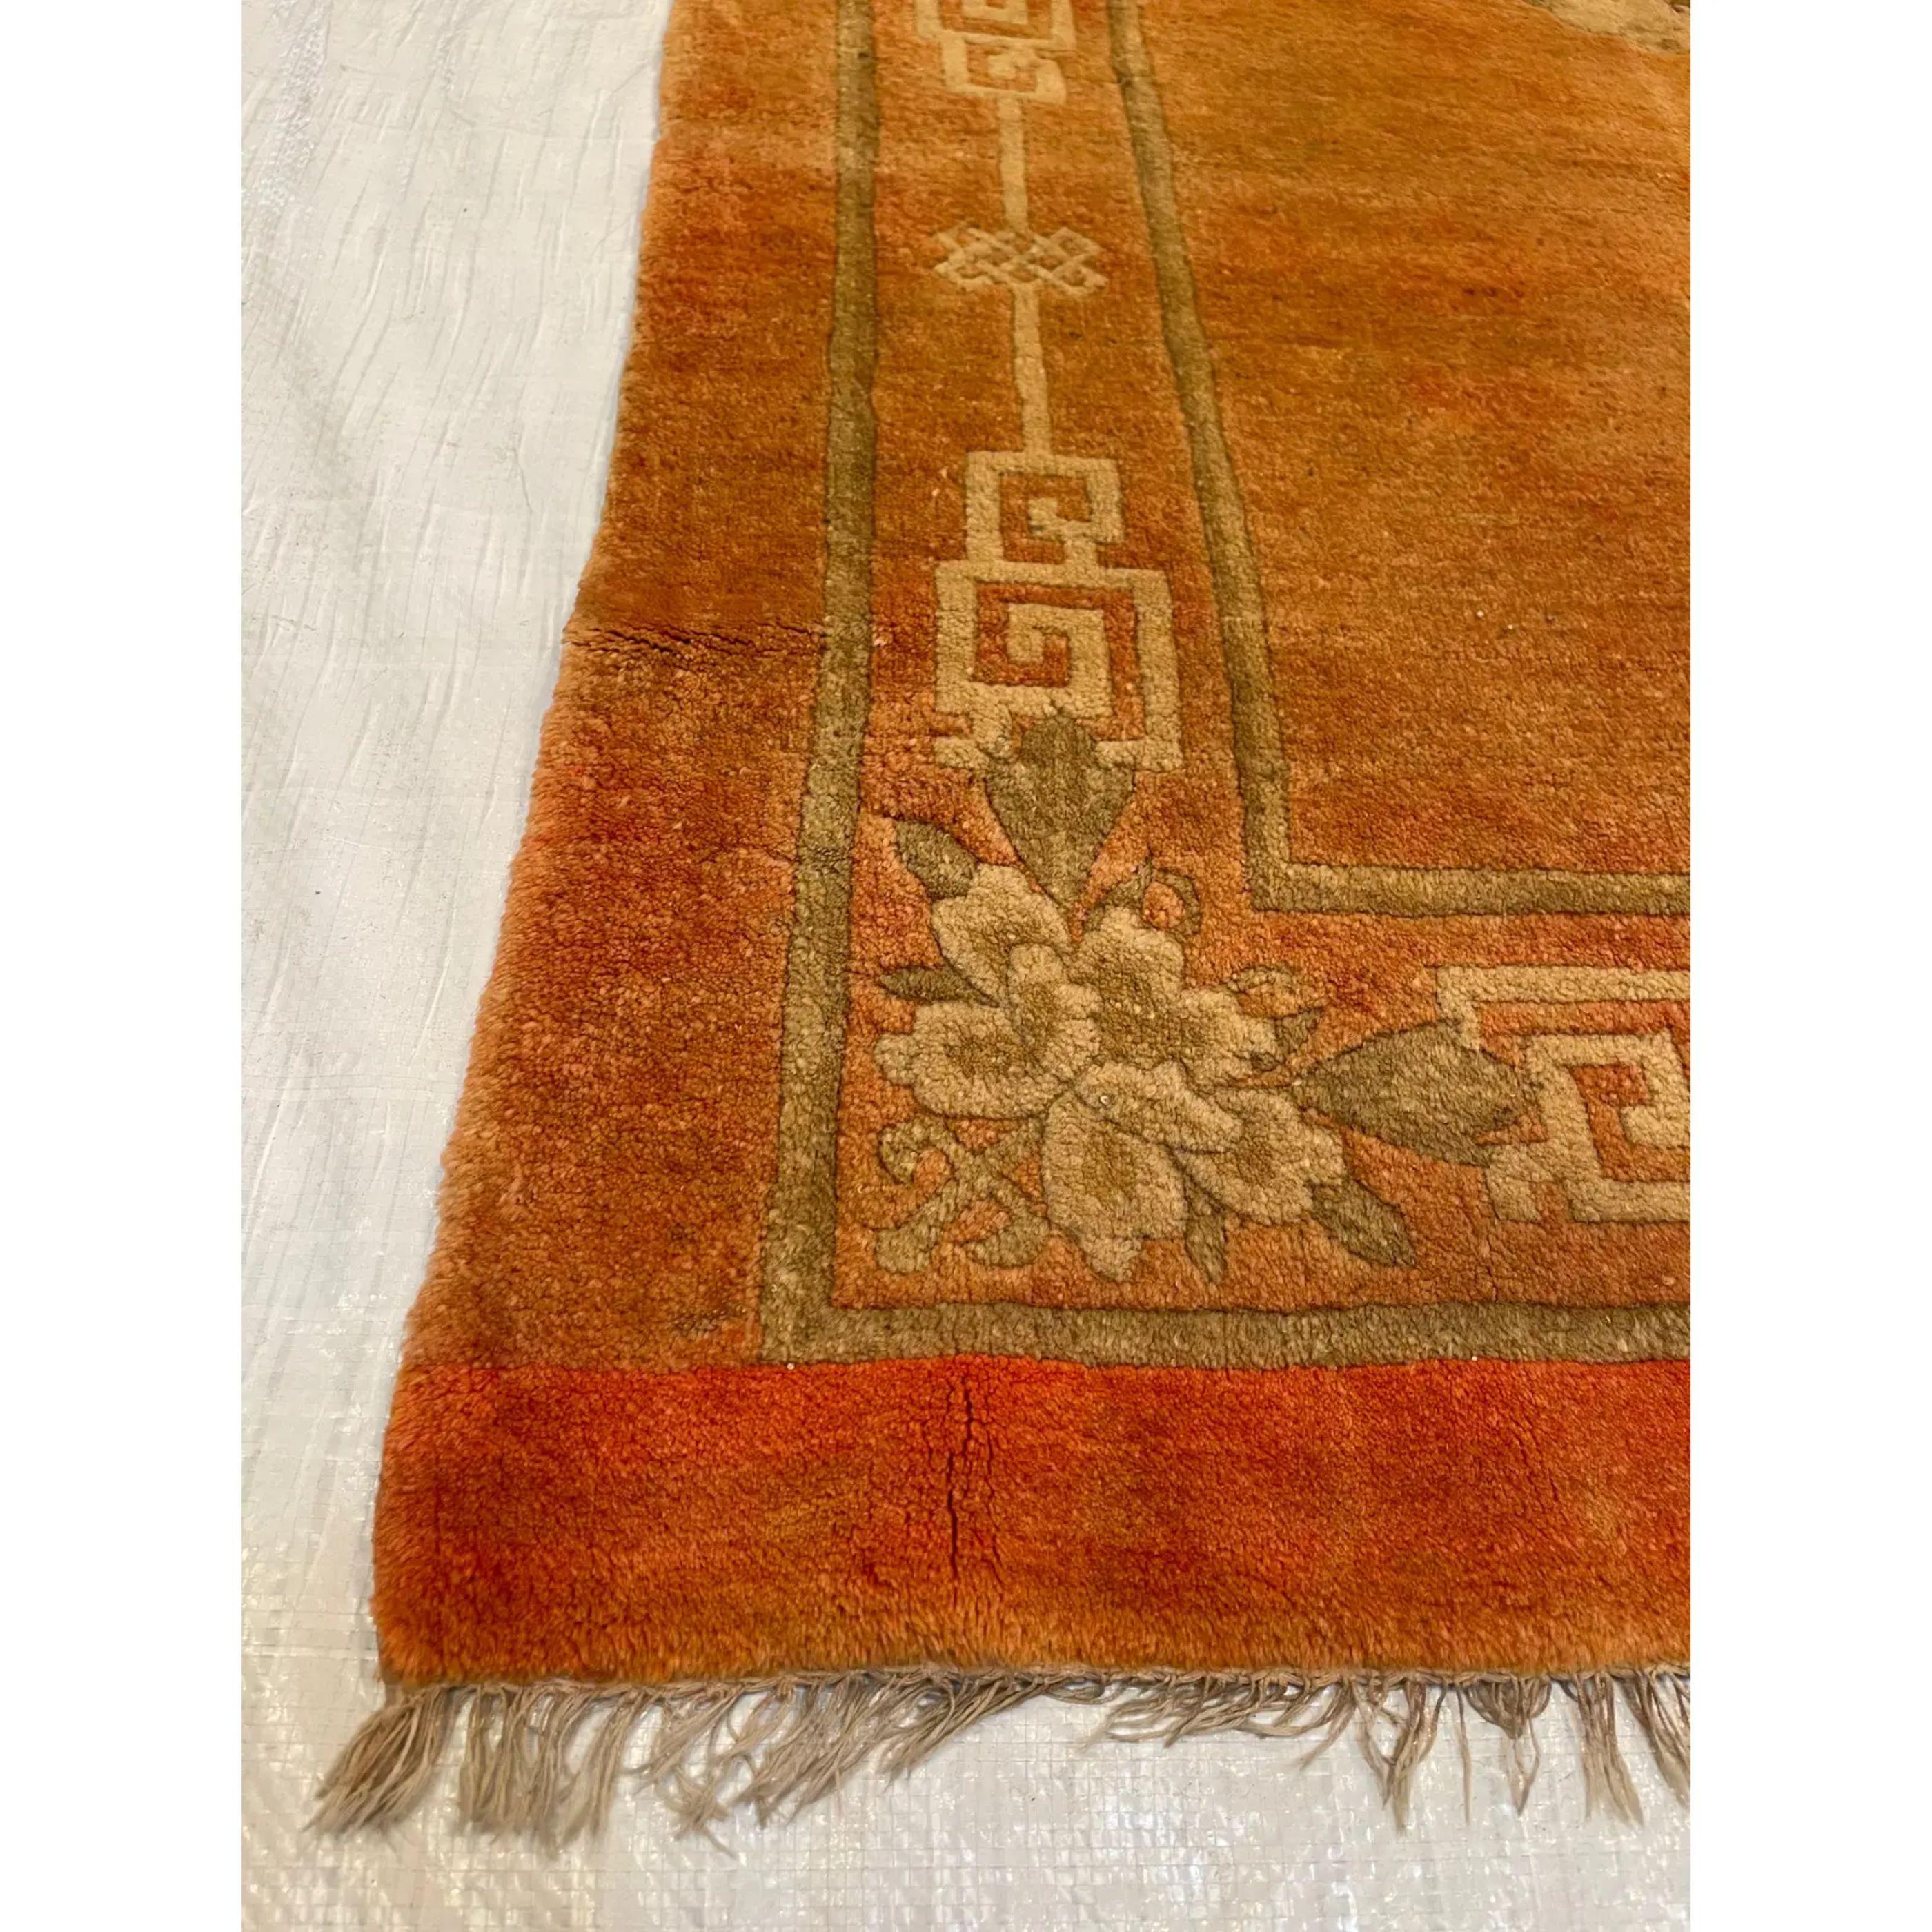 Antike chinesische Teppiche wurden, im Gegensatz zu den meisten antiken Teppichproduktionen, fast ausschließlich für den Eigenbedarf gewebt. Da sie meist vor europäischen und westlichen Einflüssen geschützt waren, ist dies der Grund, warum diese